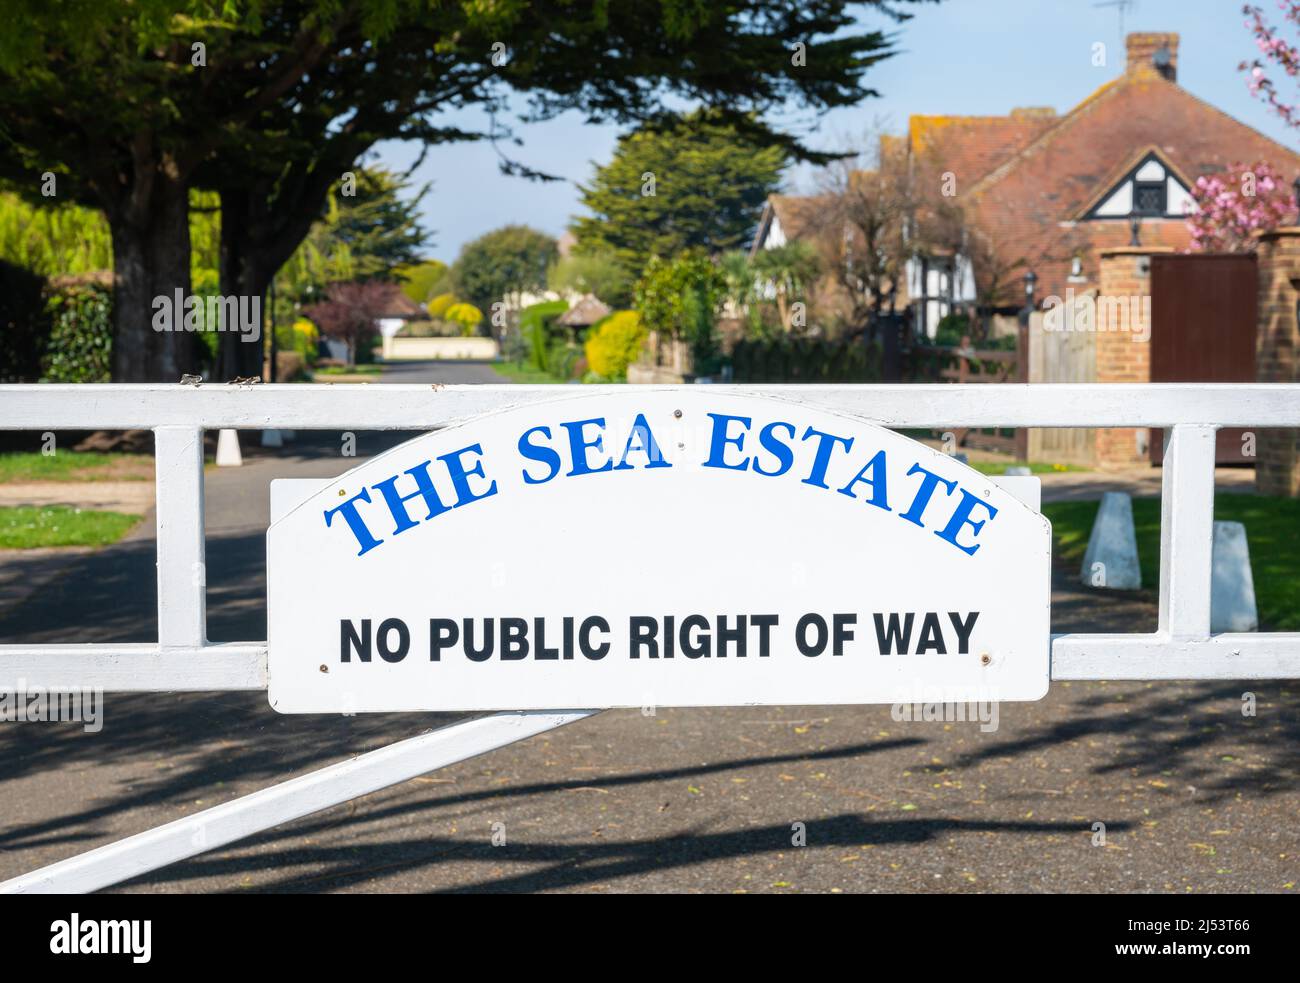 Panneau et porte à l'entrée de la propriété de la mer, une propriété privée sans droit de passage public à Rustington, West Sussex, Angleterre, Royaume-Uni. Banque D'Images